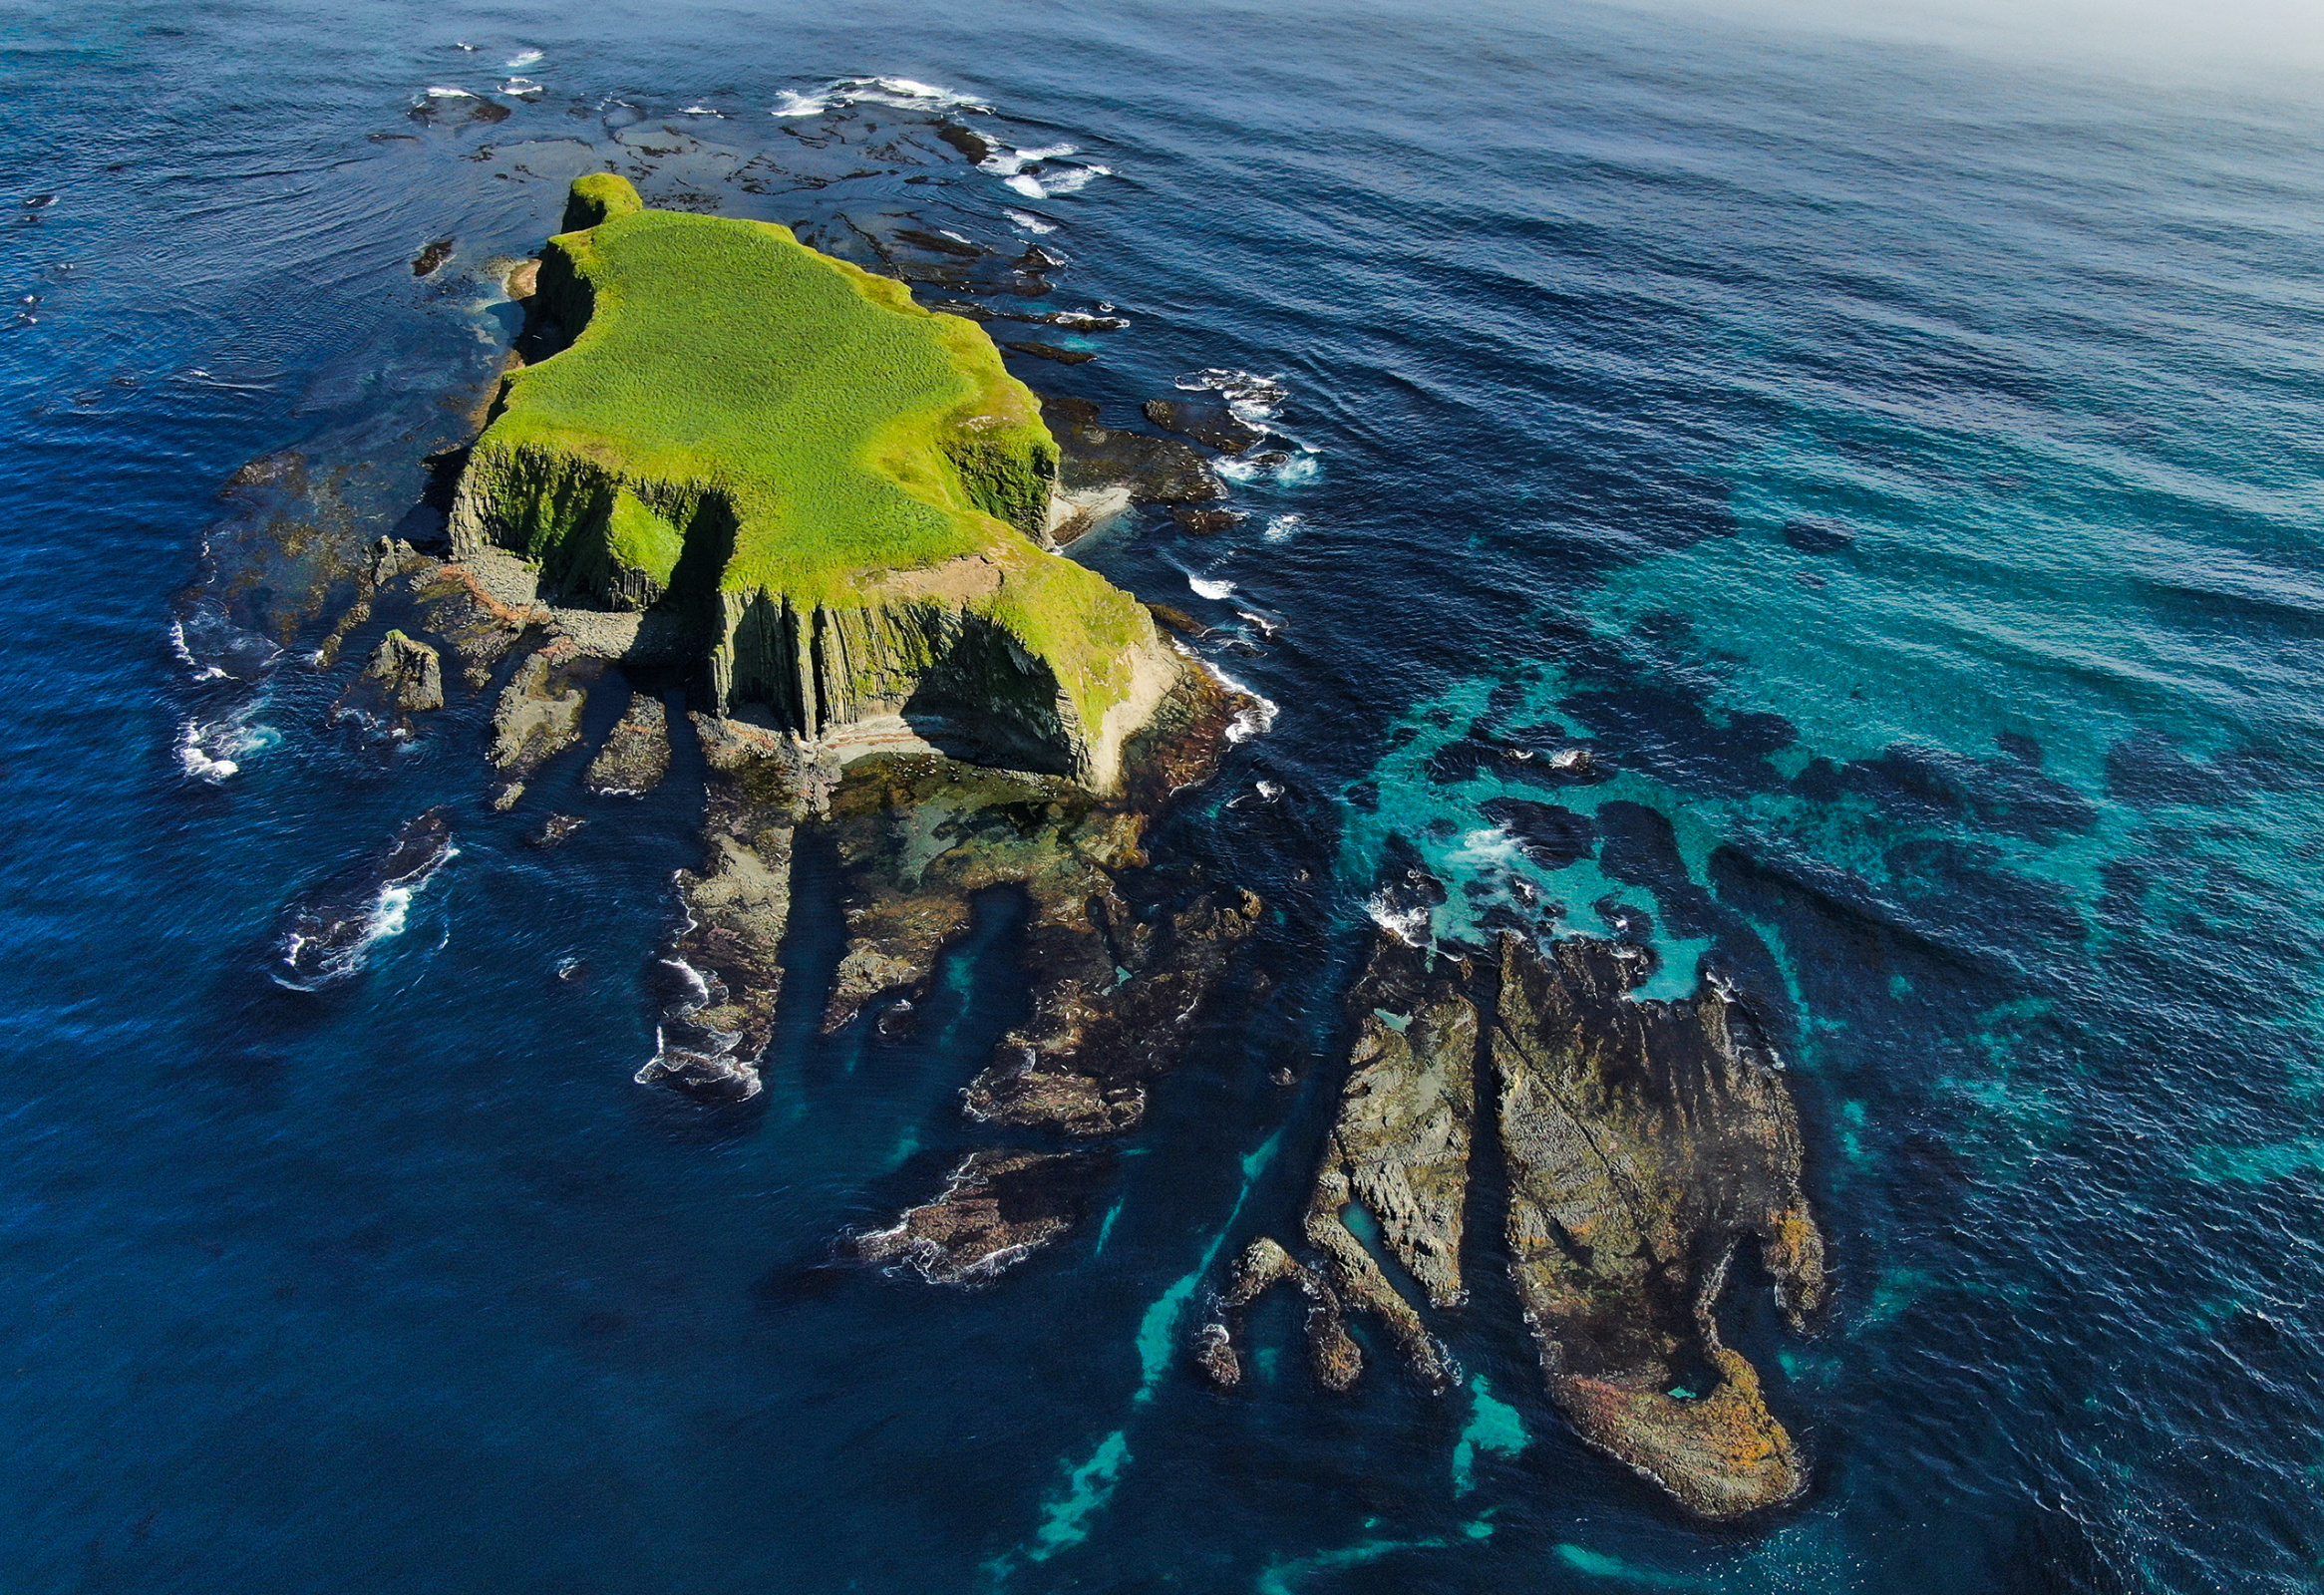 Труднодоступность Курильских островов позволила сохранить здесь эталонные участки природы. Фото: Максим Тарасов 